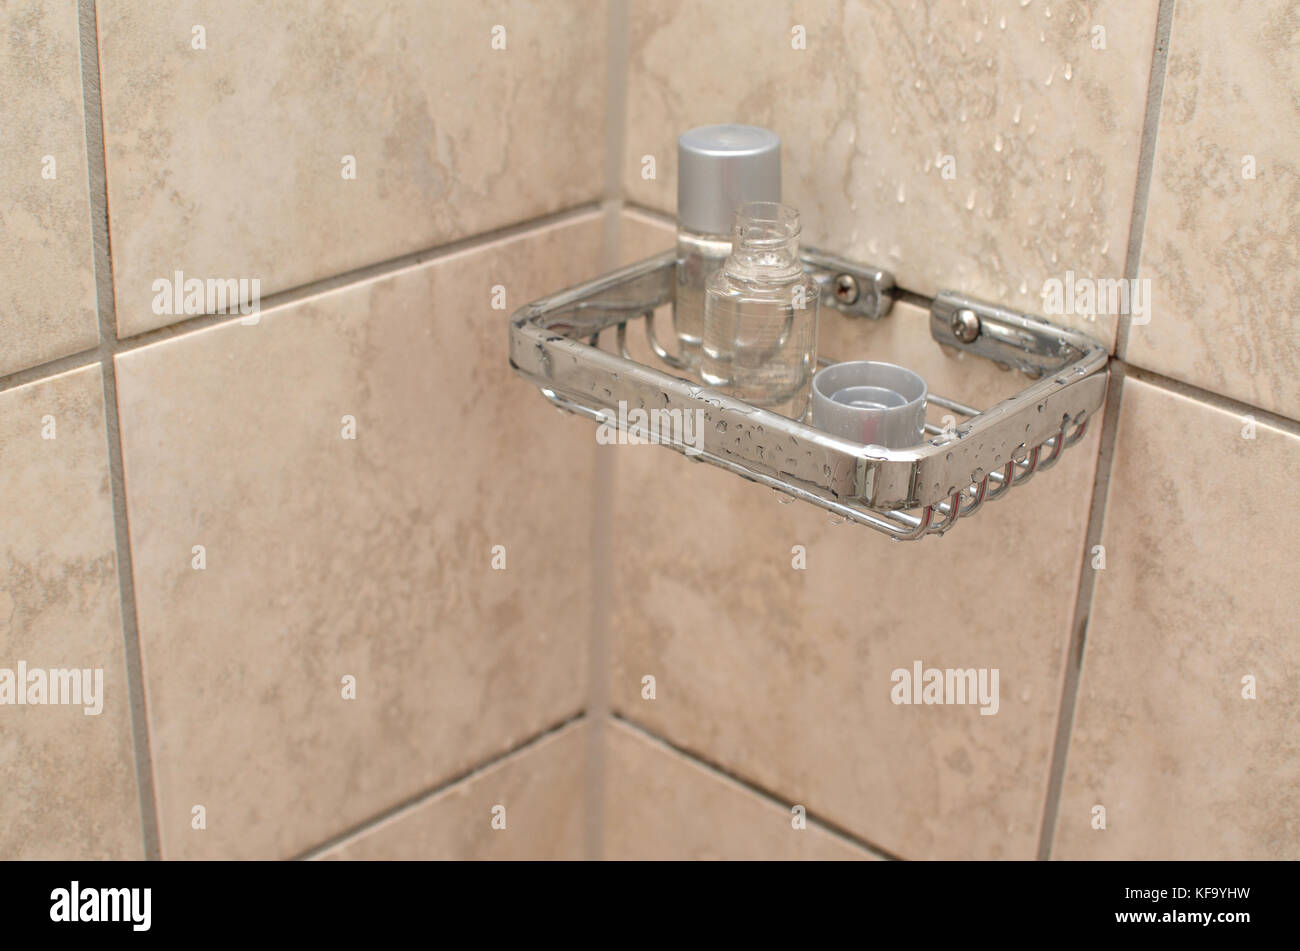 https://c8.alamy.com/comp/KF9YHW/bottles-of-shampoo-on-a-holder-in-a-hotel-bathroom-KF9YHW.jpg